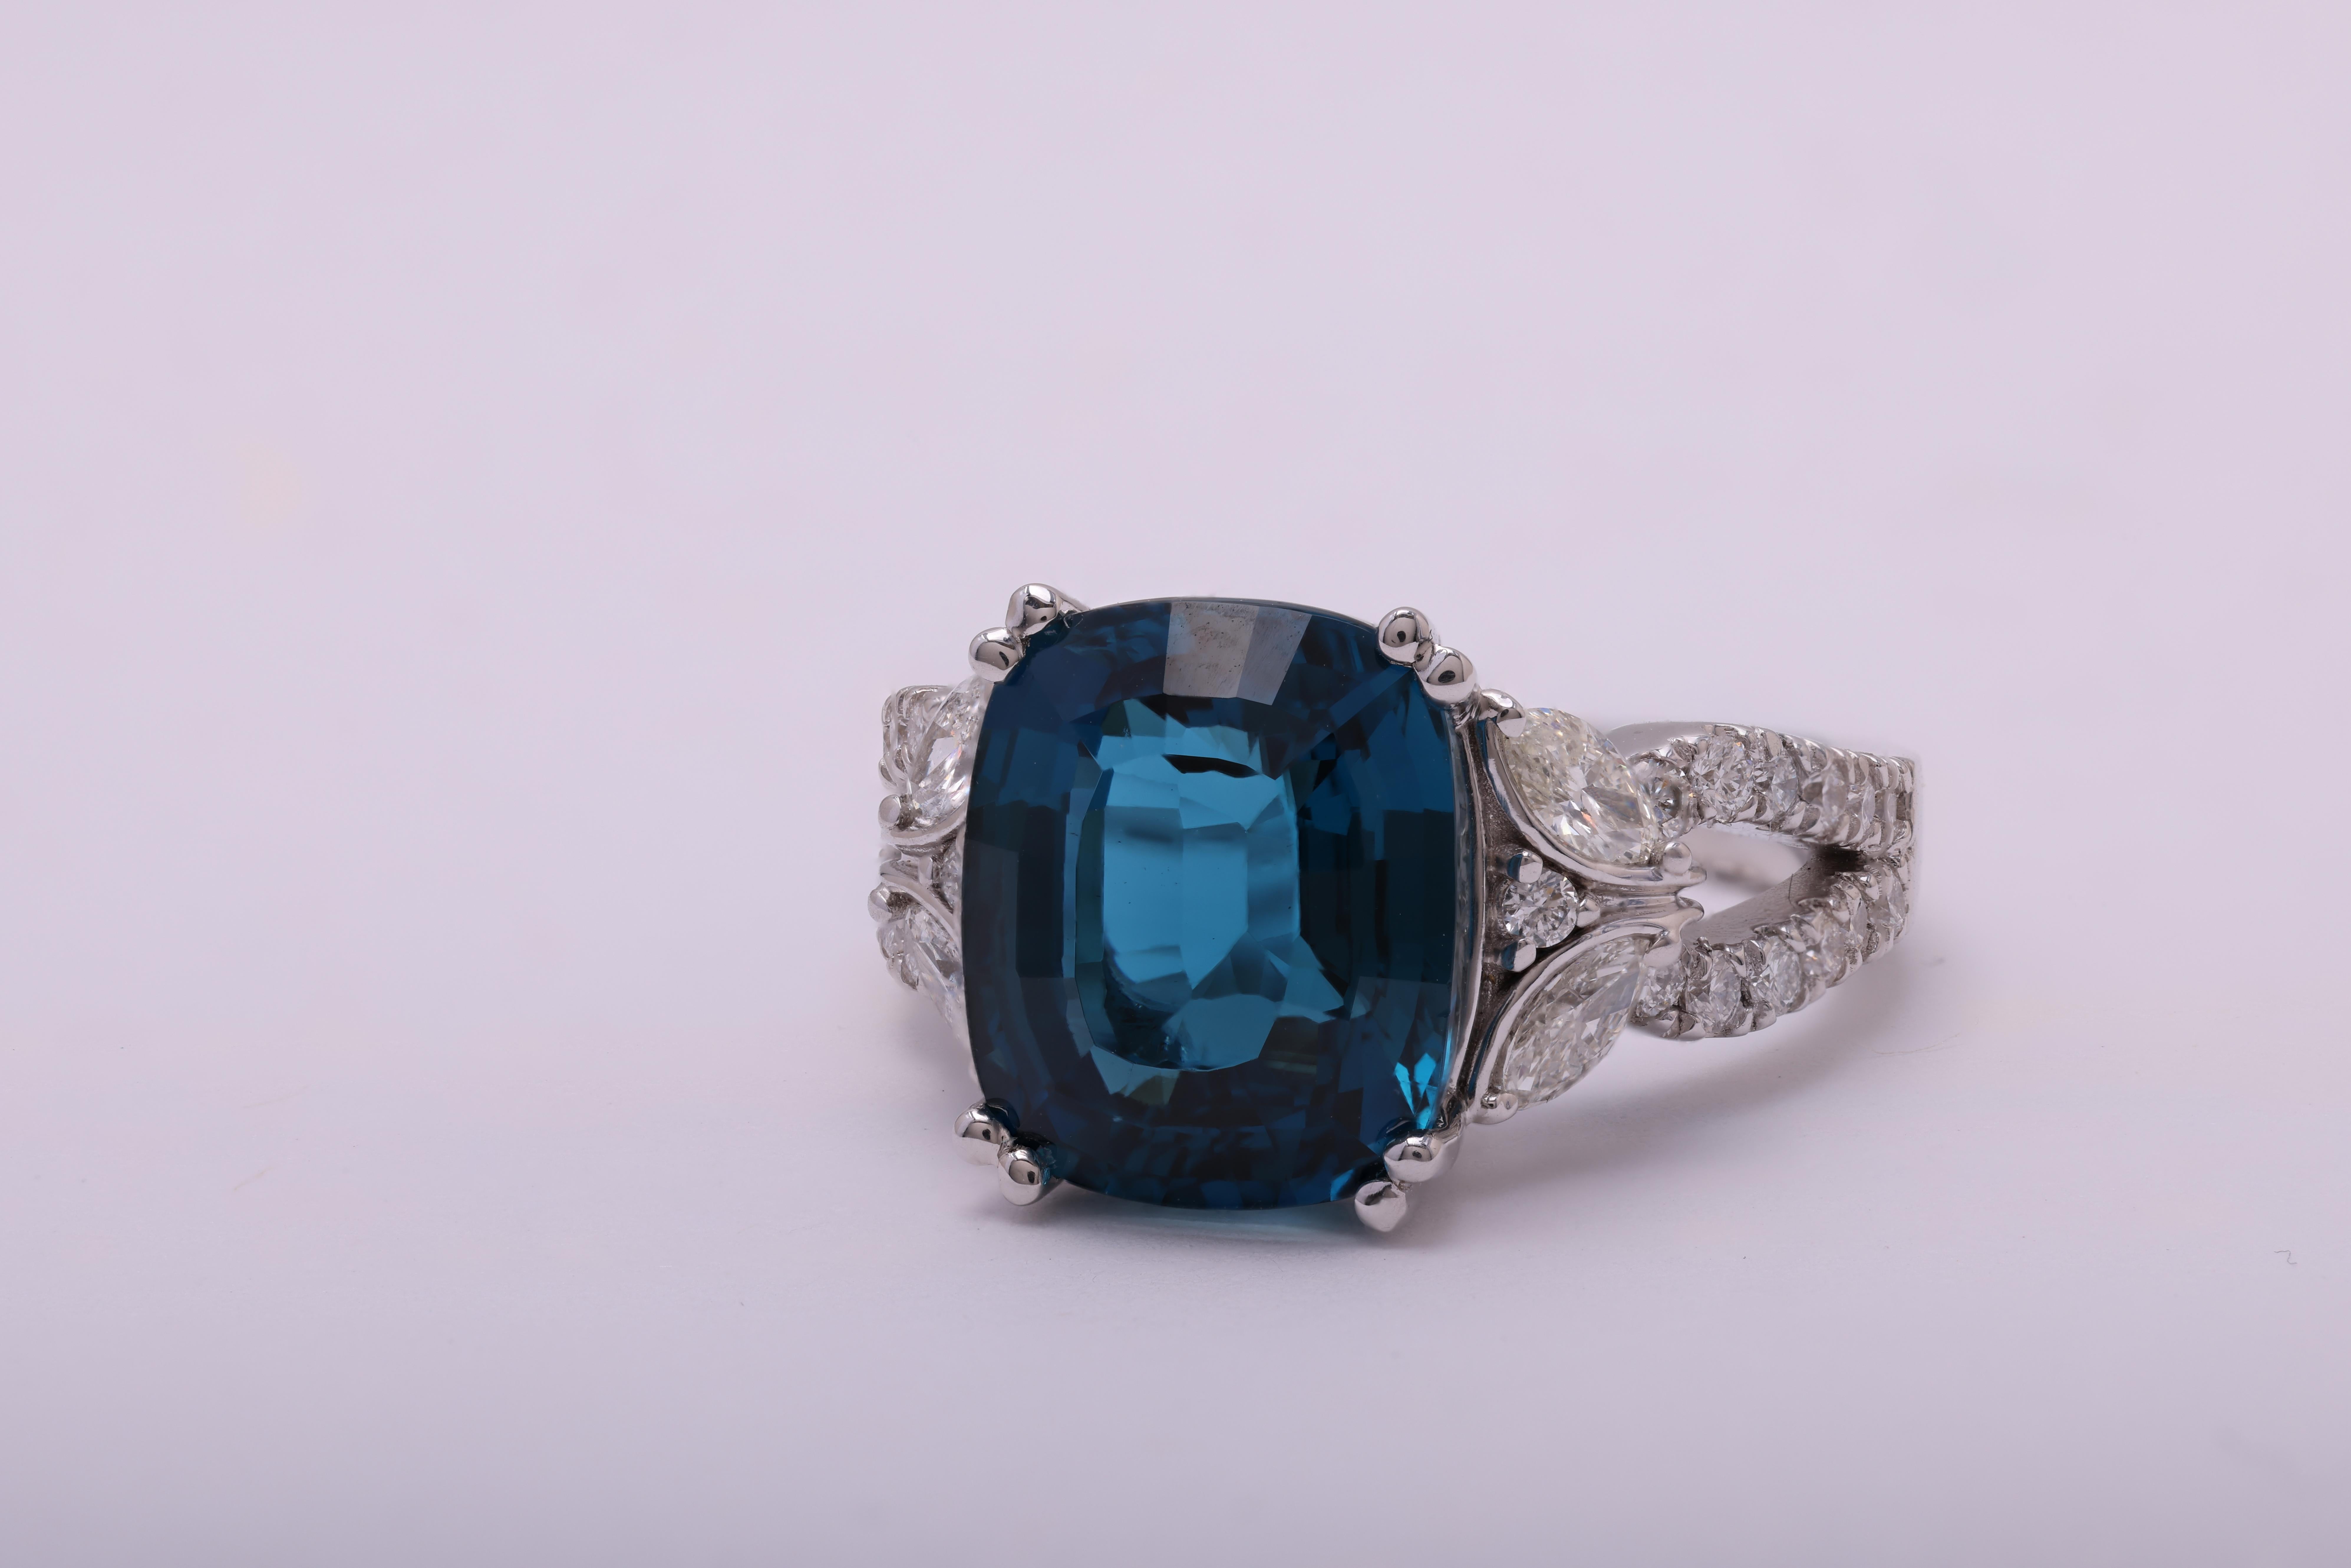 Dieser exquisite Ring präsentiert einen 12 mm x 10 mm großen Topas im Ovalschliff, der elegant auf einer handgravierten Fassung thront. Das zarte Schmetterlingsdesign aus weißen Diamanten im Marquise- und Rundschliff auf dem seitlichen Schaft